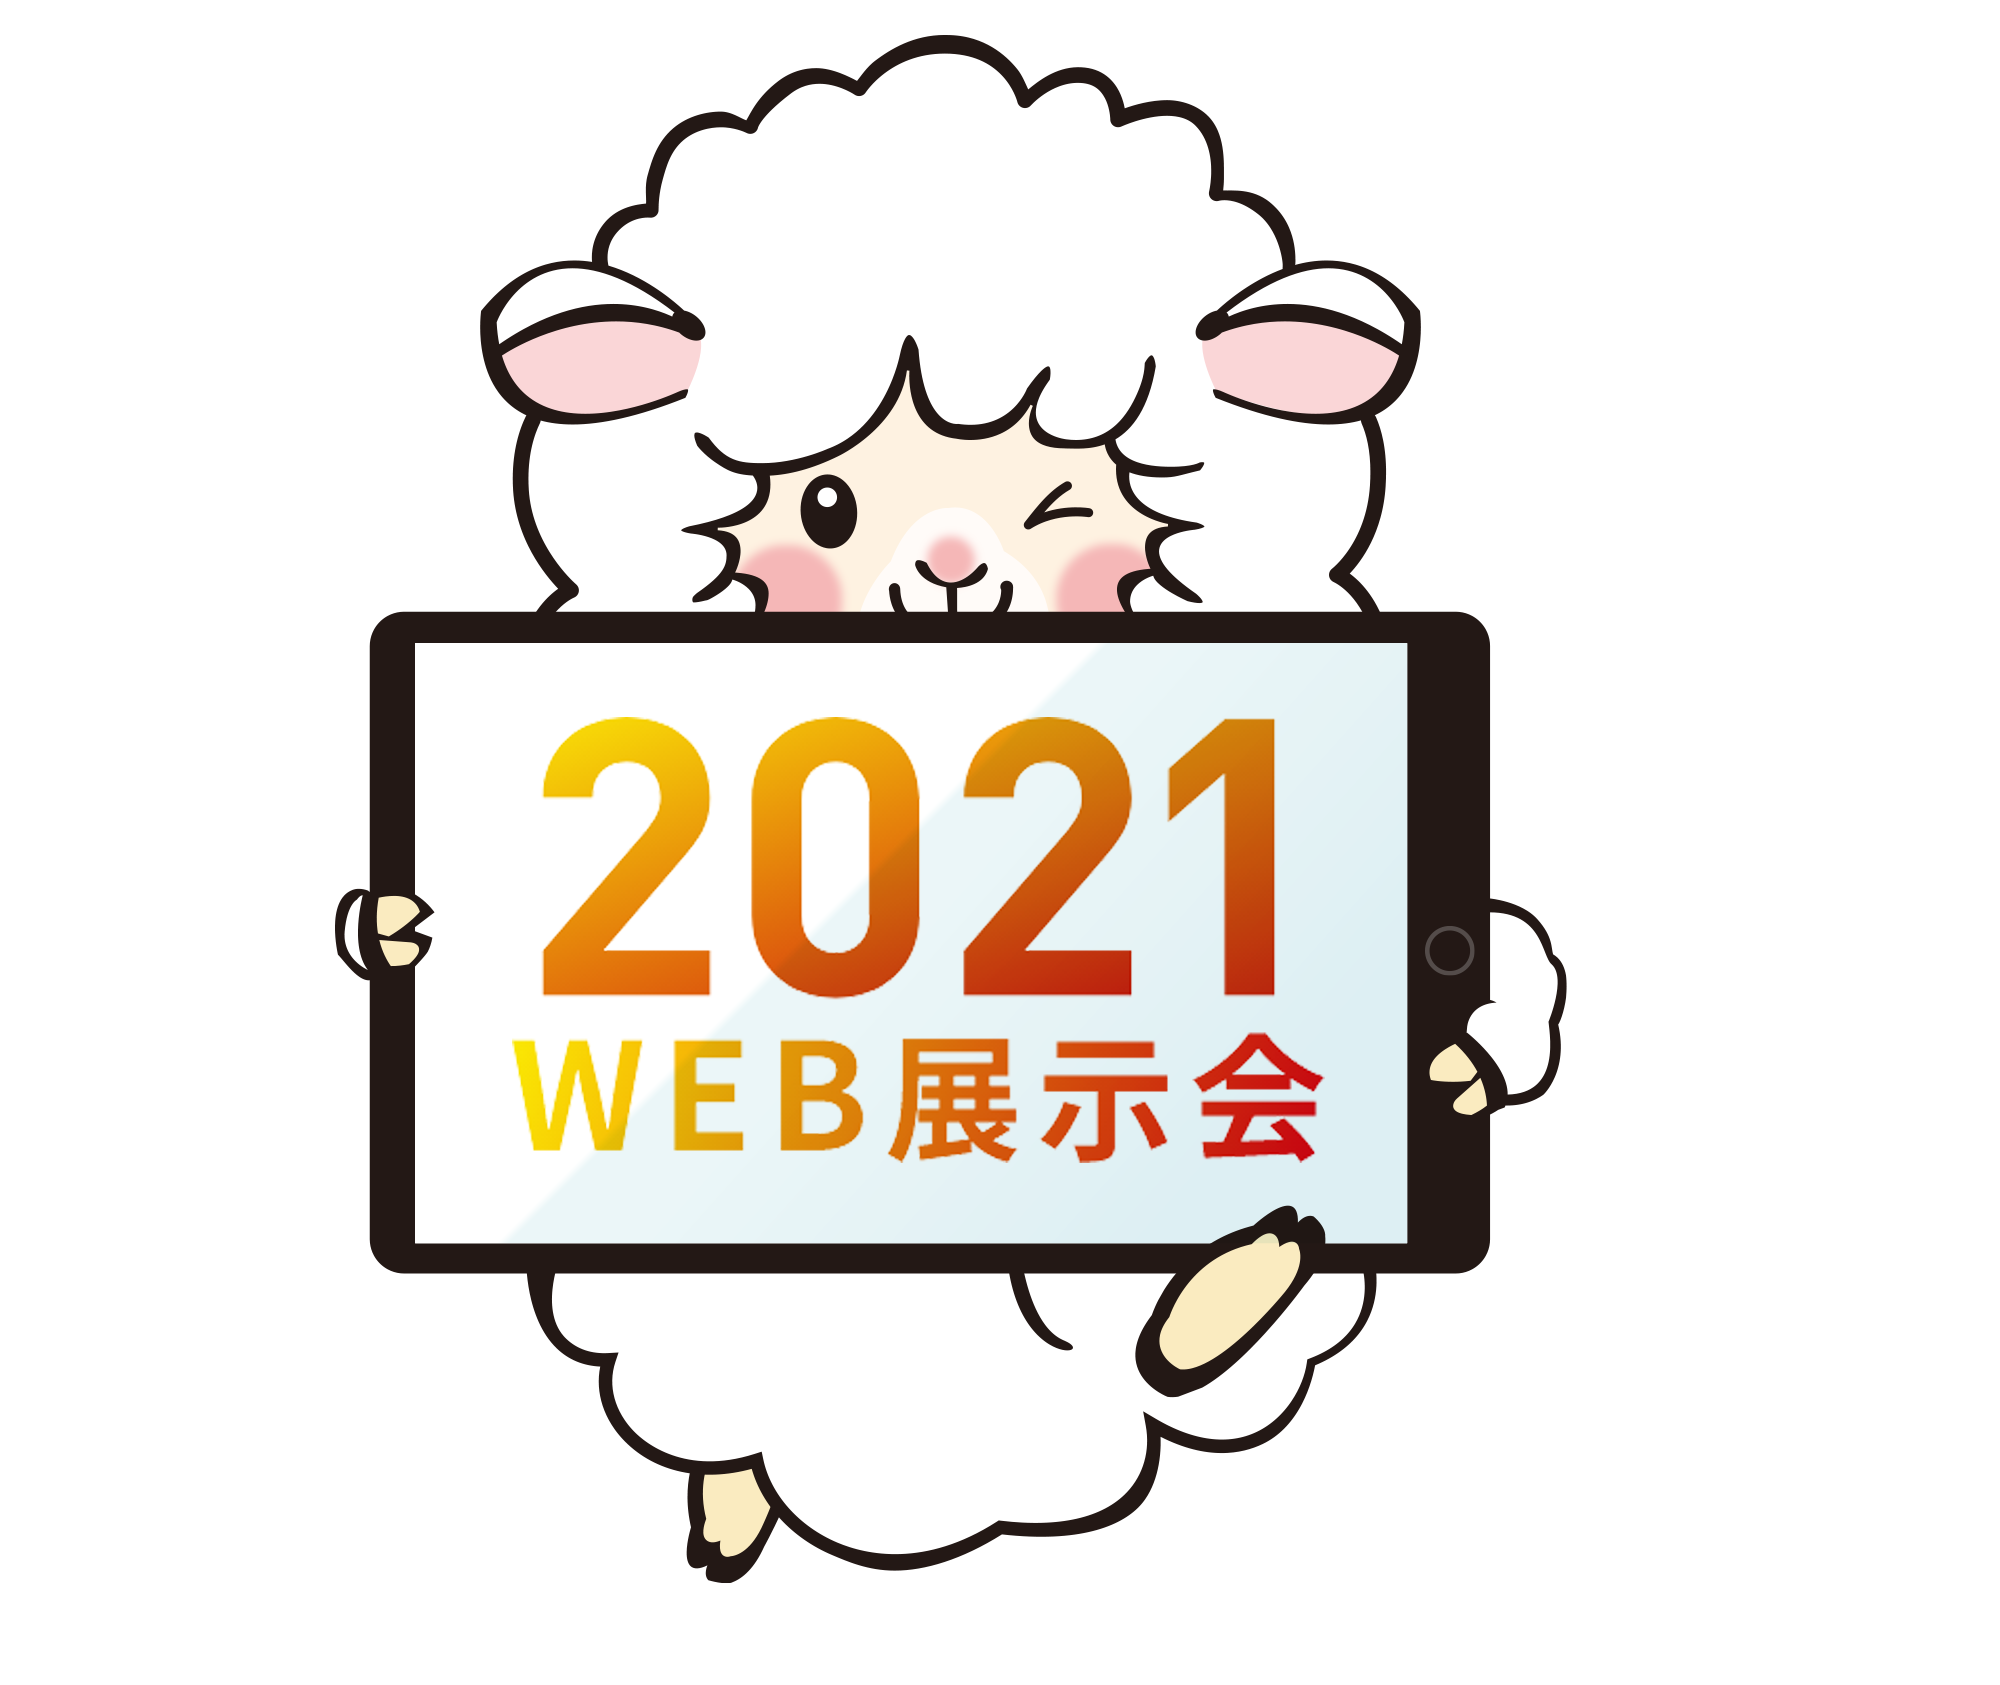 2020WEB展示会